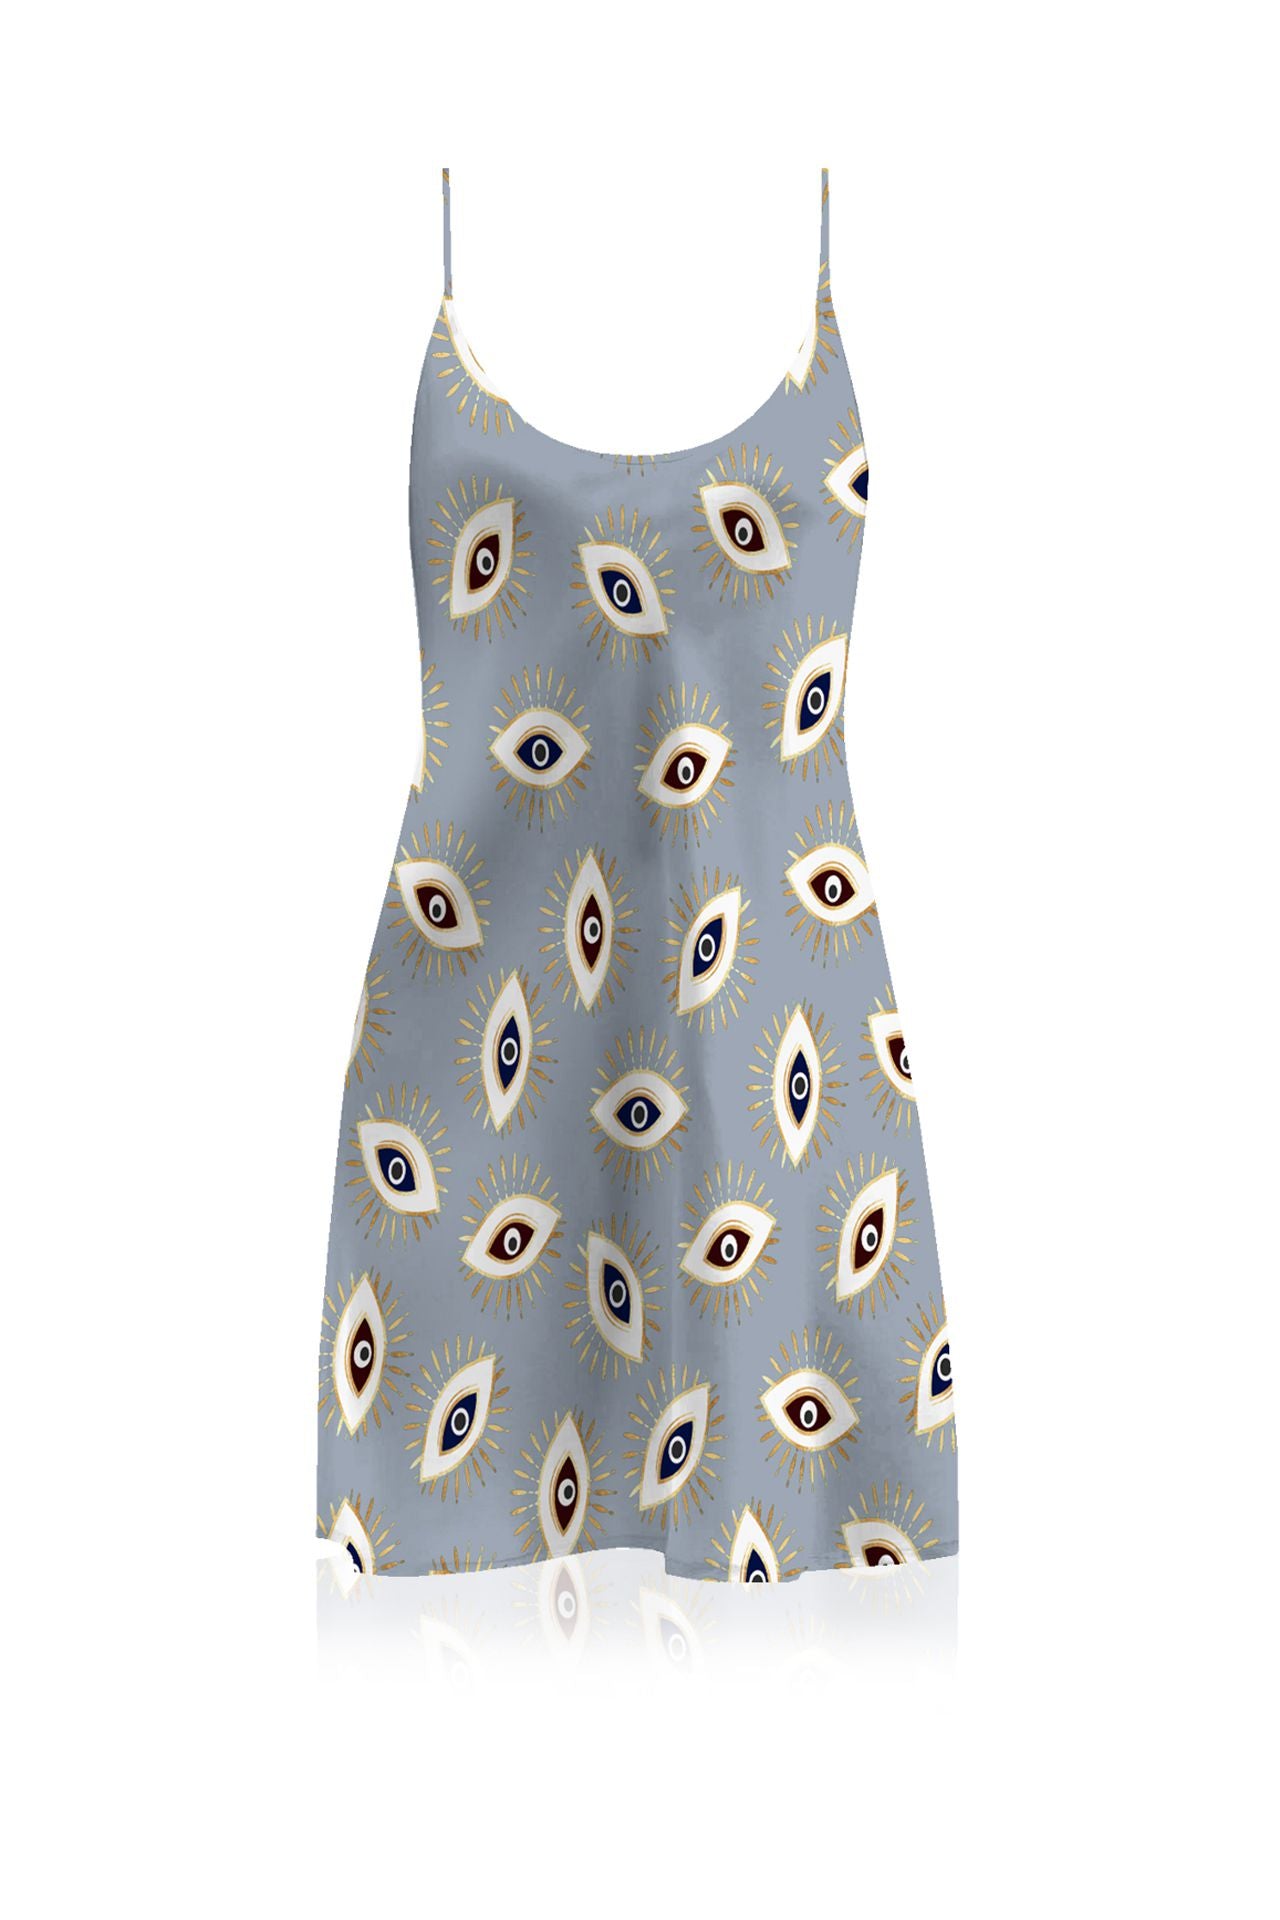  "evil eye dress" "Kyle X Shahida" "western mini dress" "short printed dress"